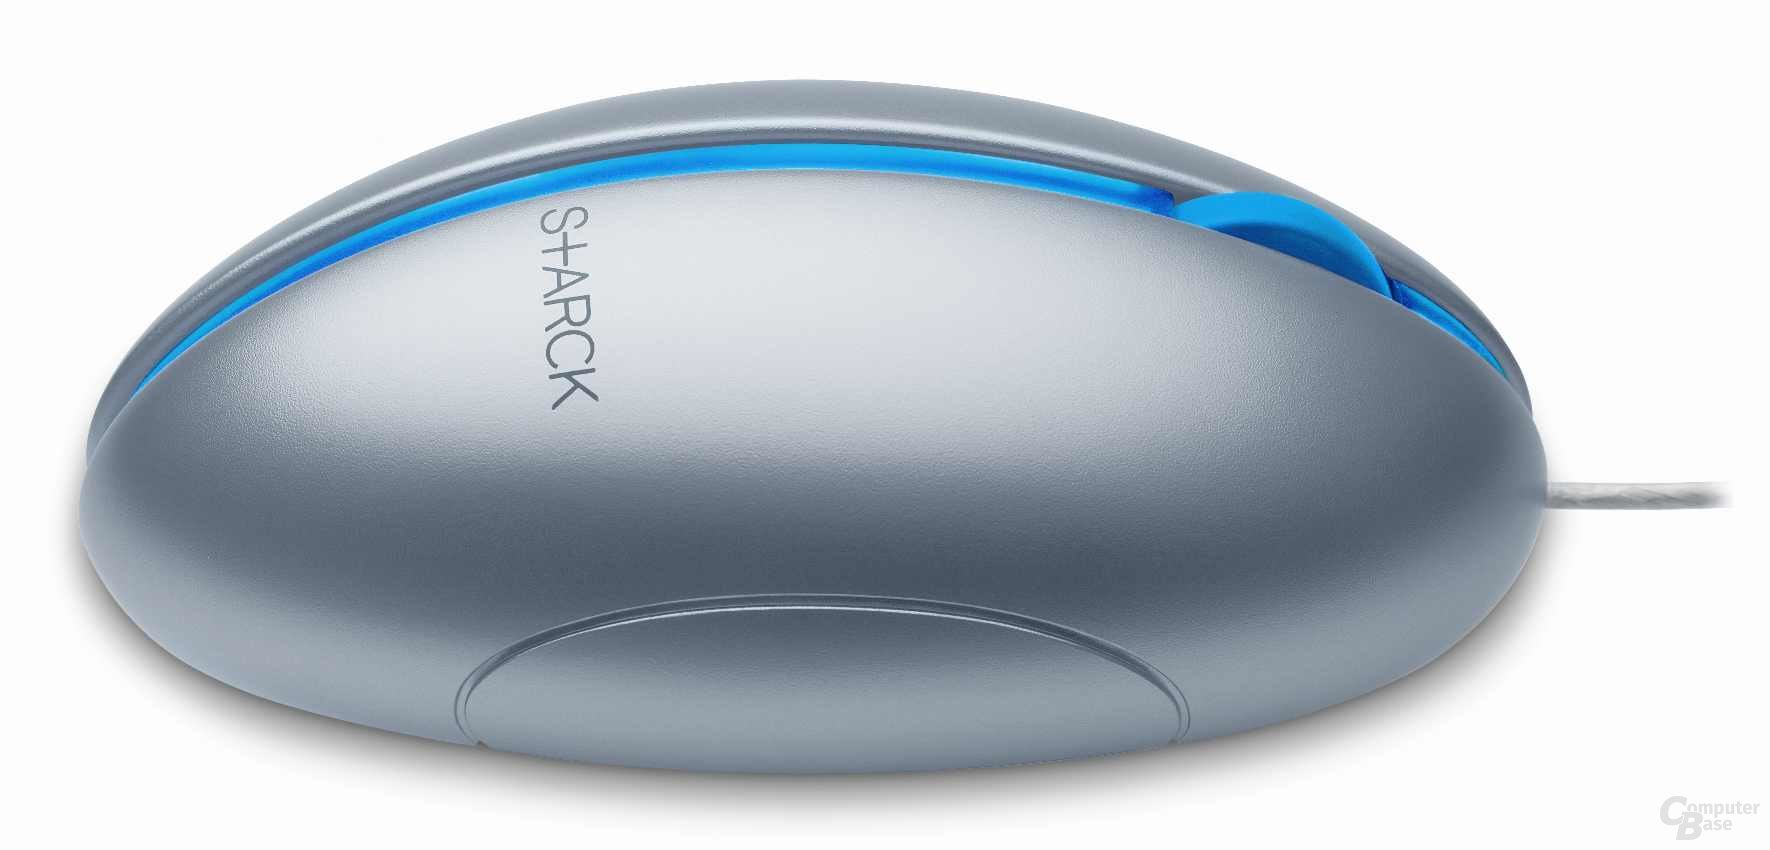 Microsoft Optical Mouse